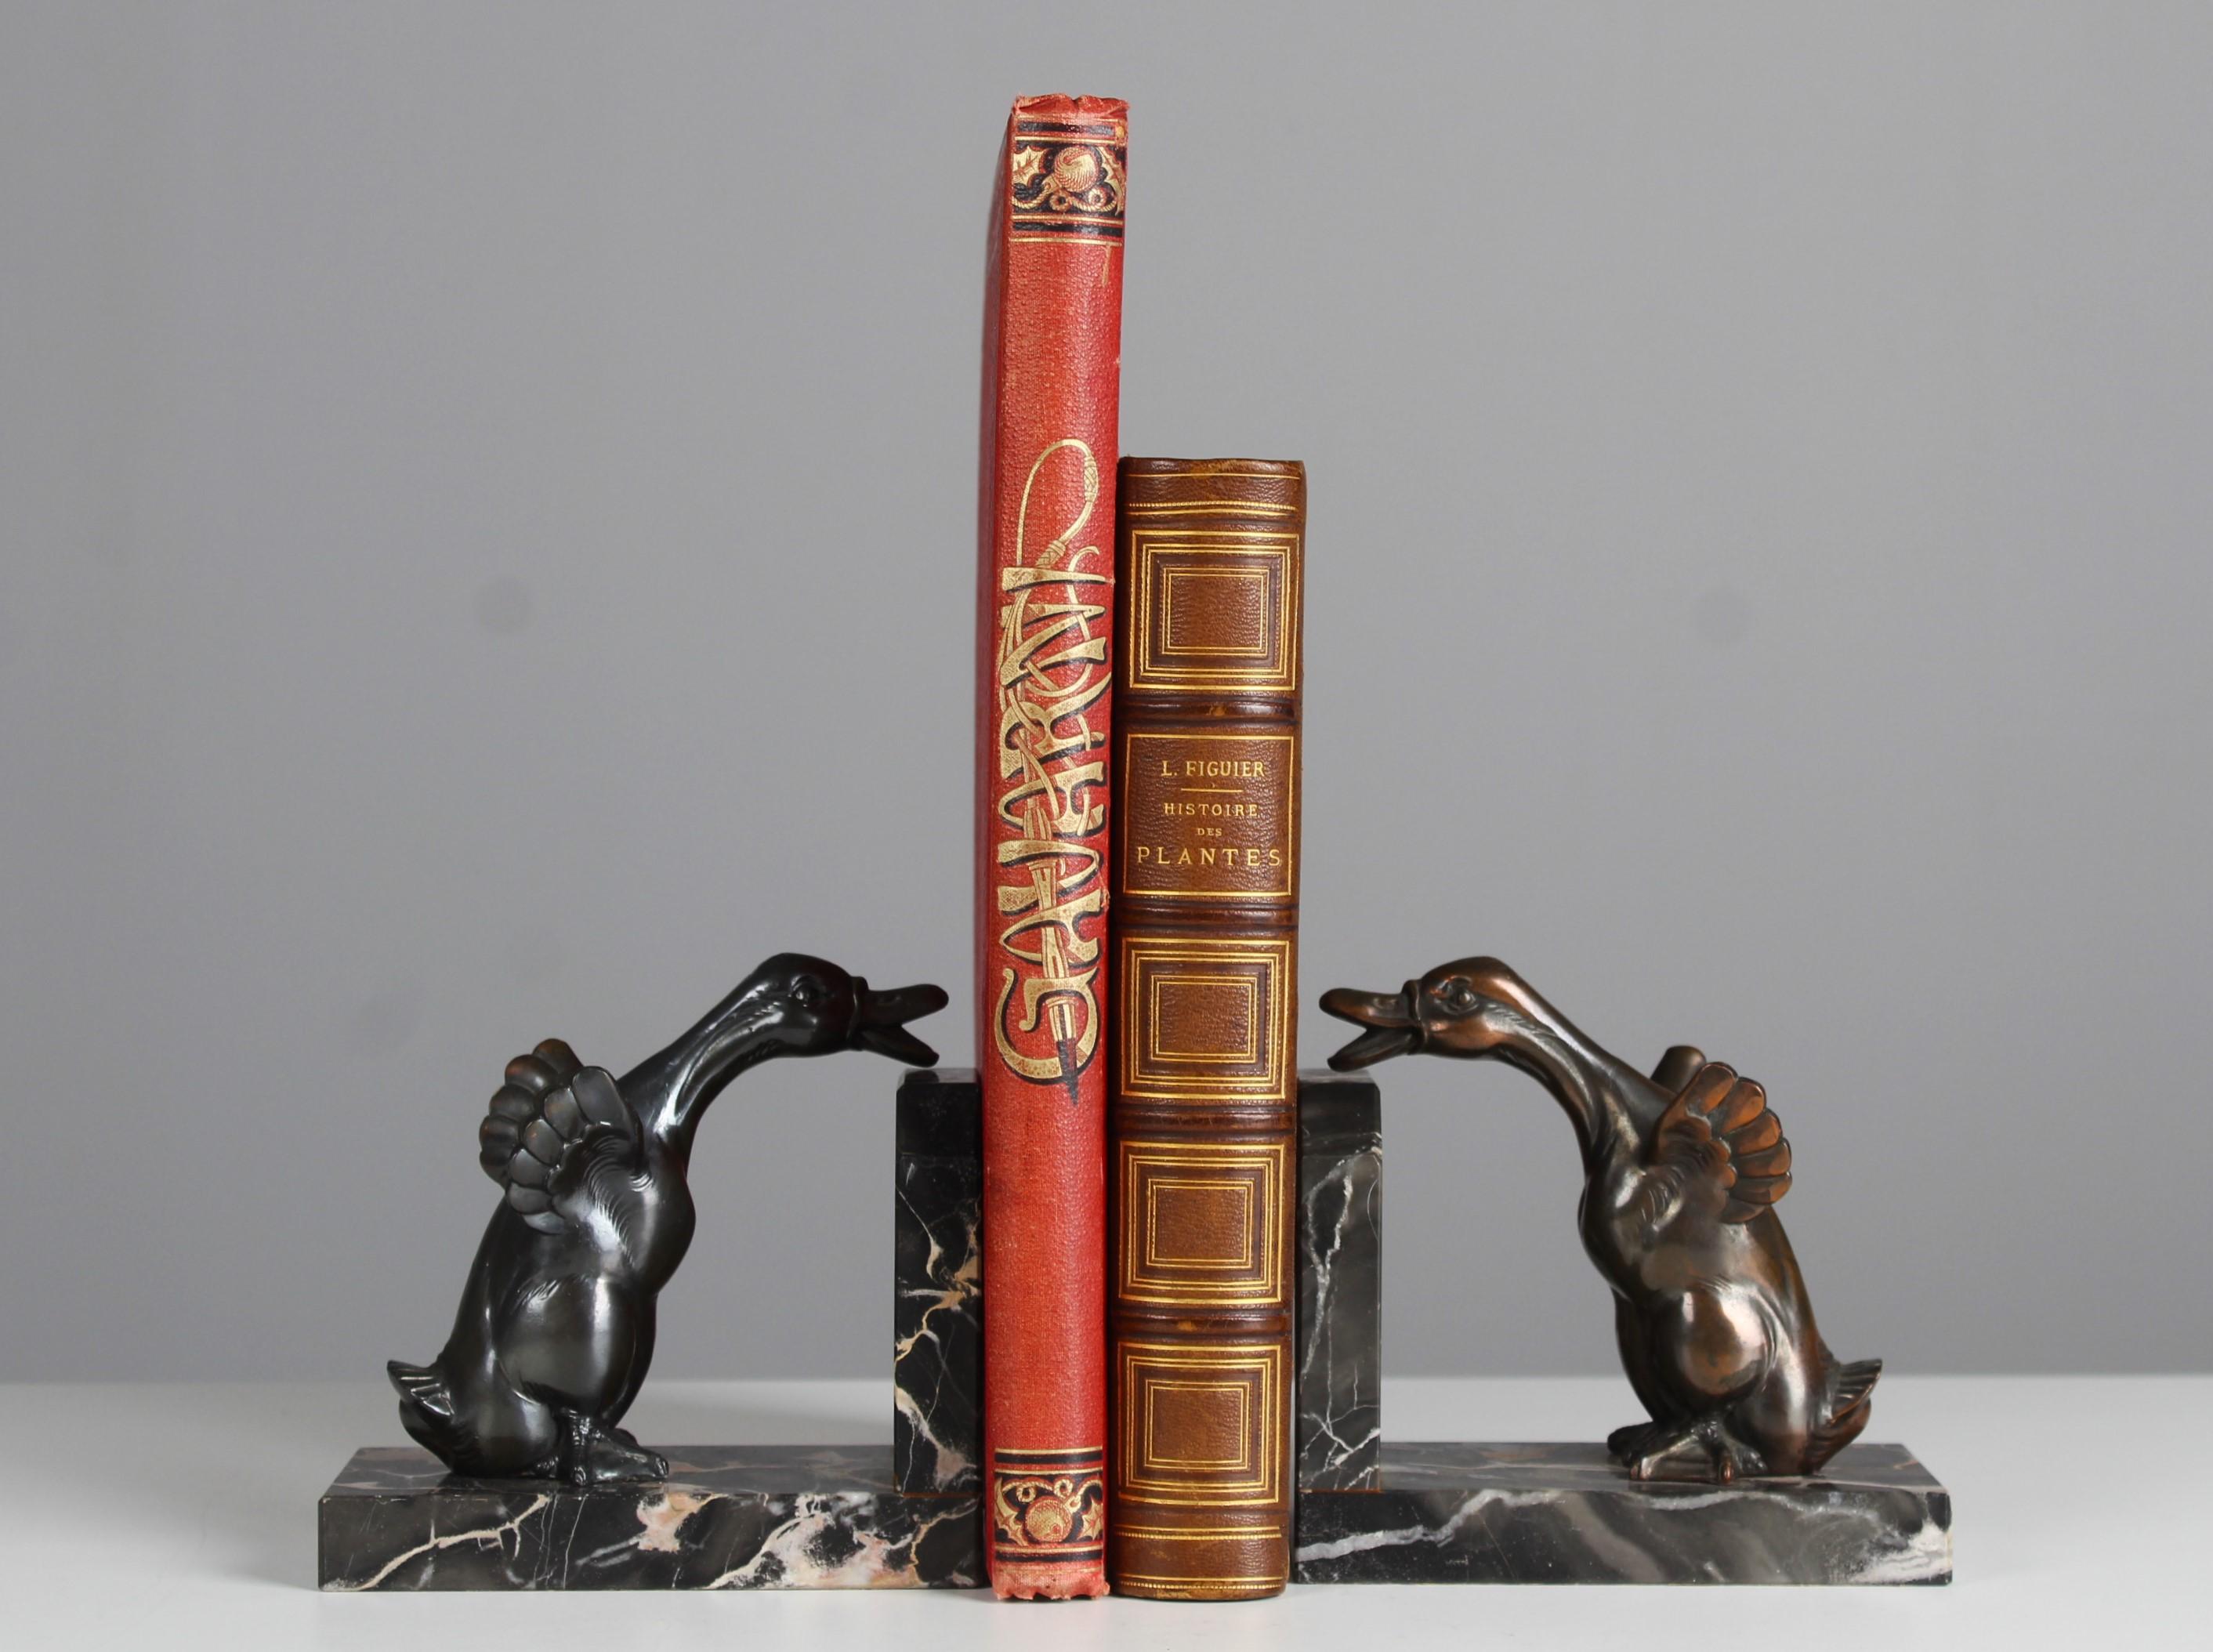 Schöne antike Buchstützen mit Skulpturen von zwei Gänsen auf einem Marmorsockel.
